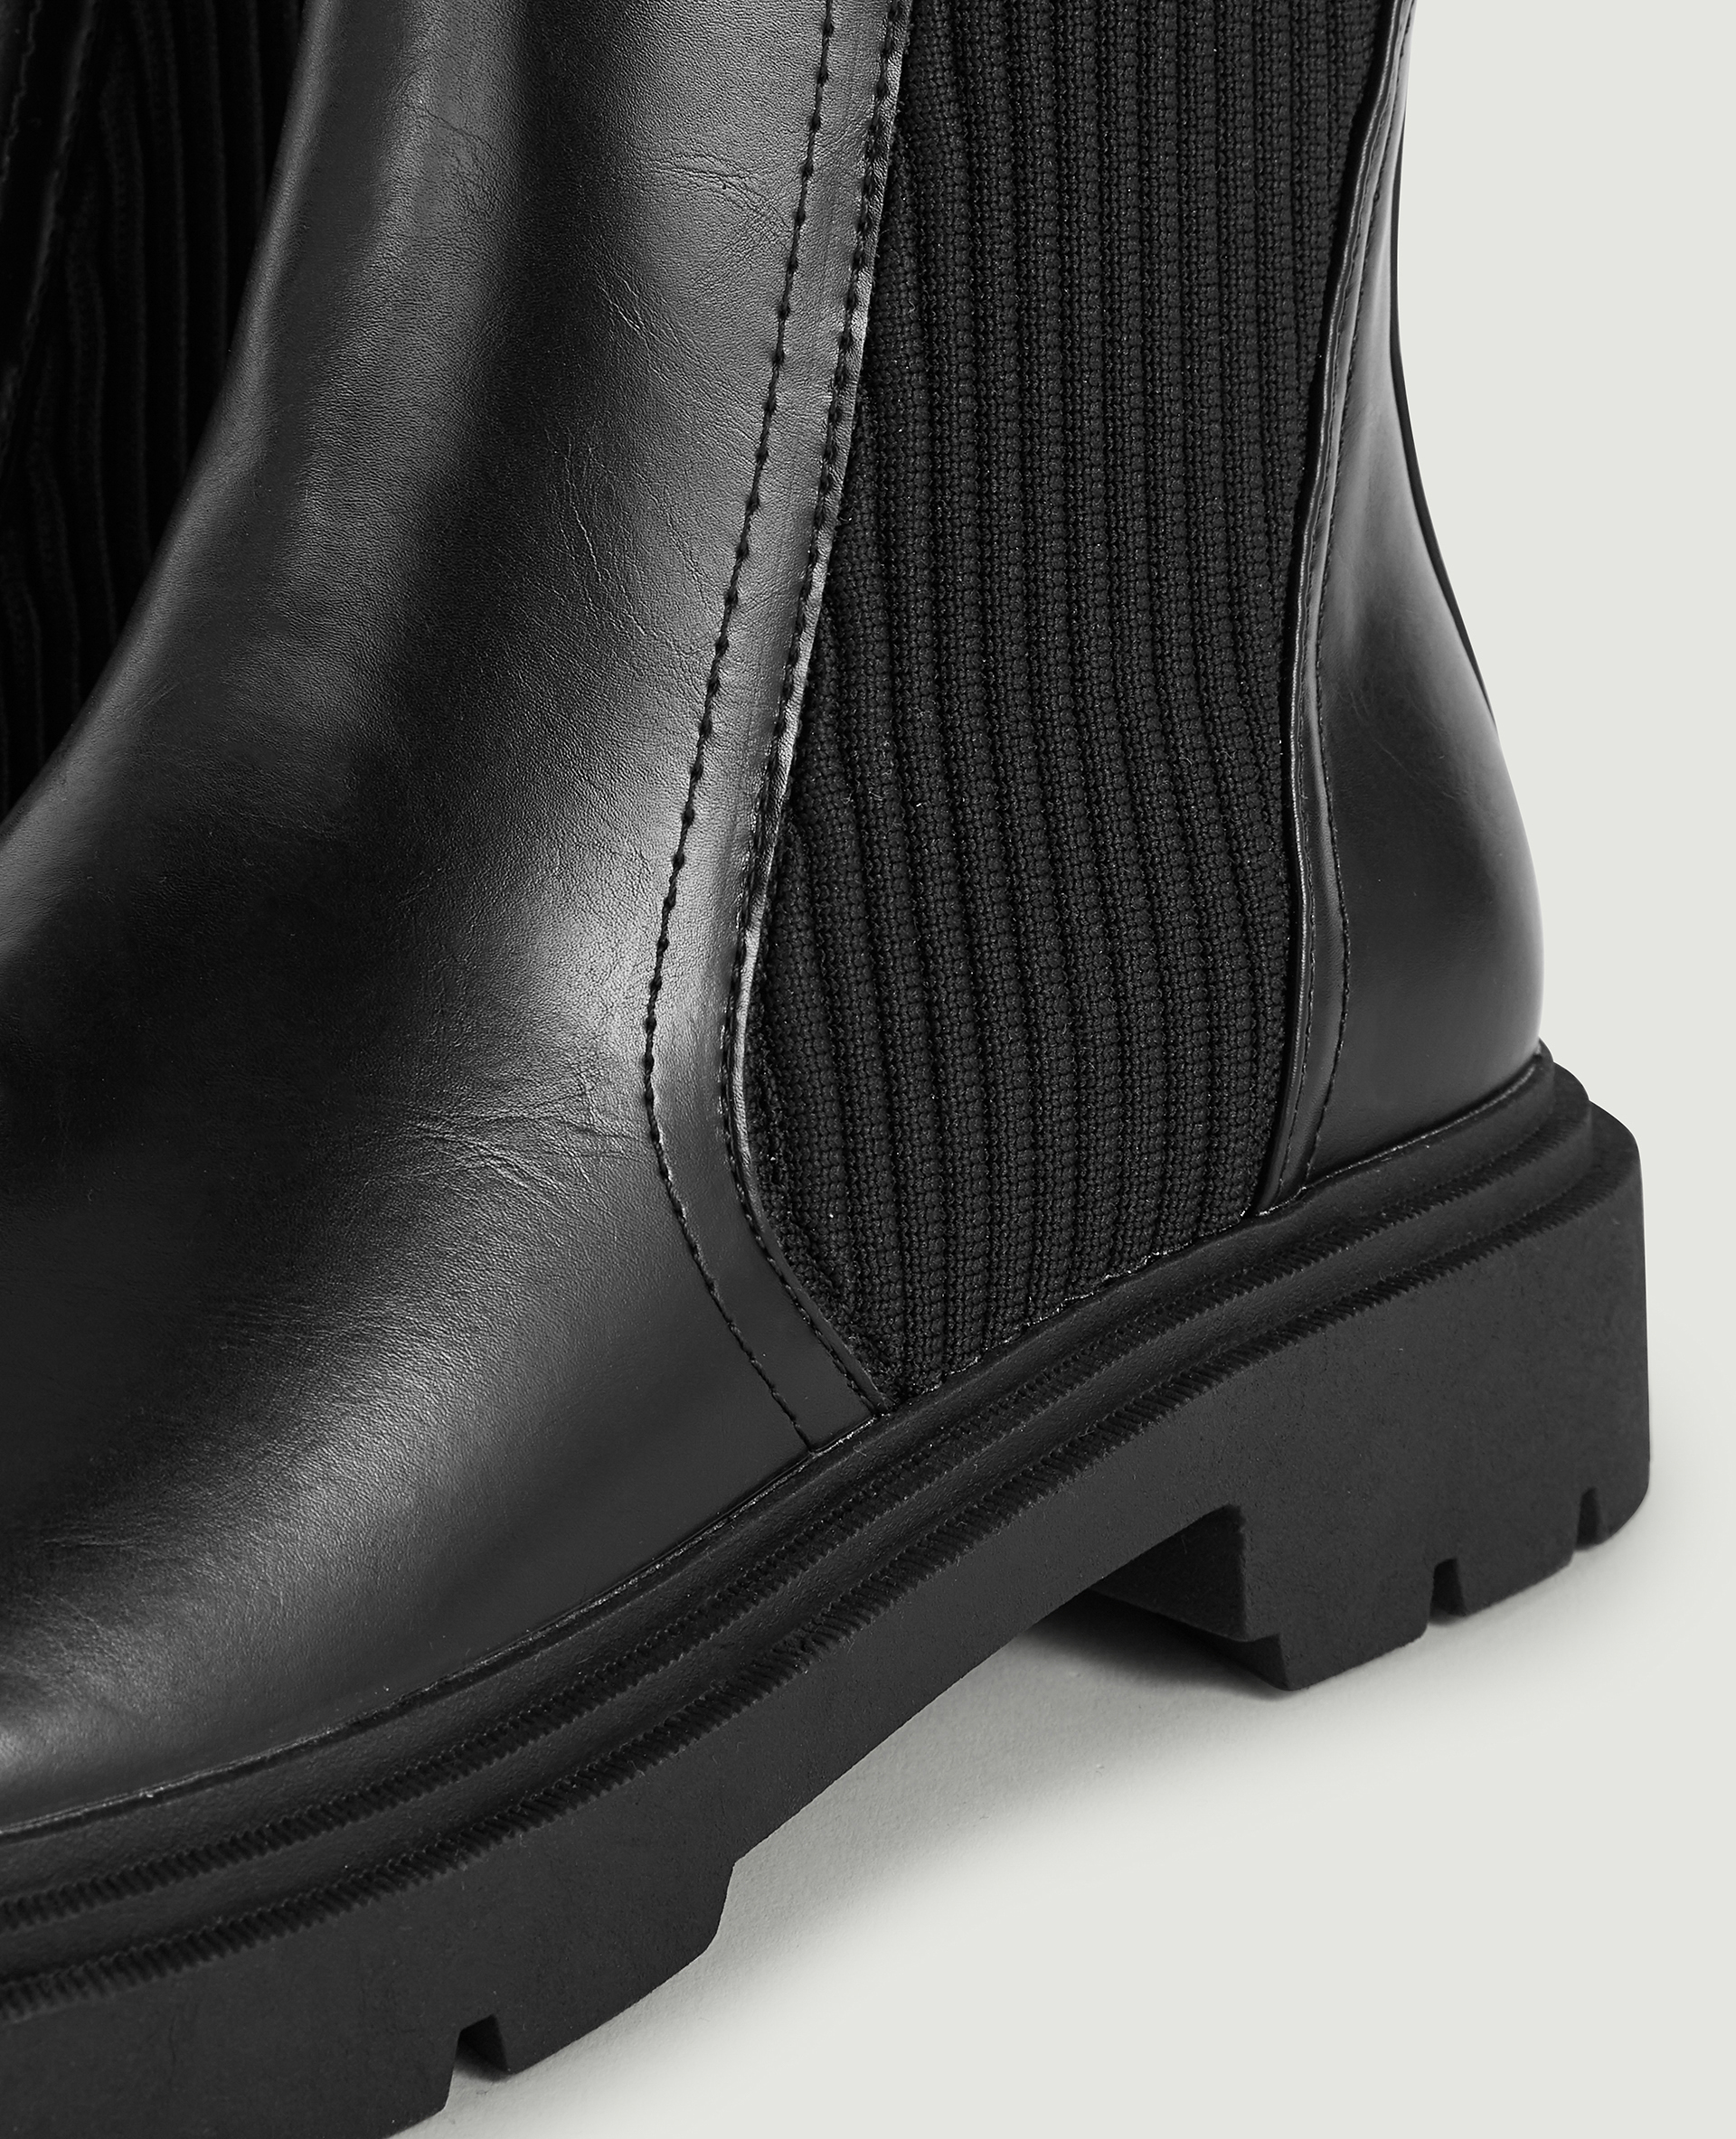 Boots semelles crantées noir - Pimkie